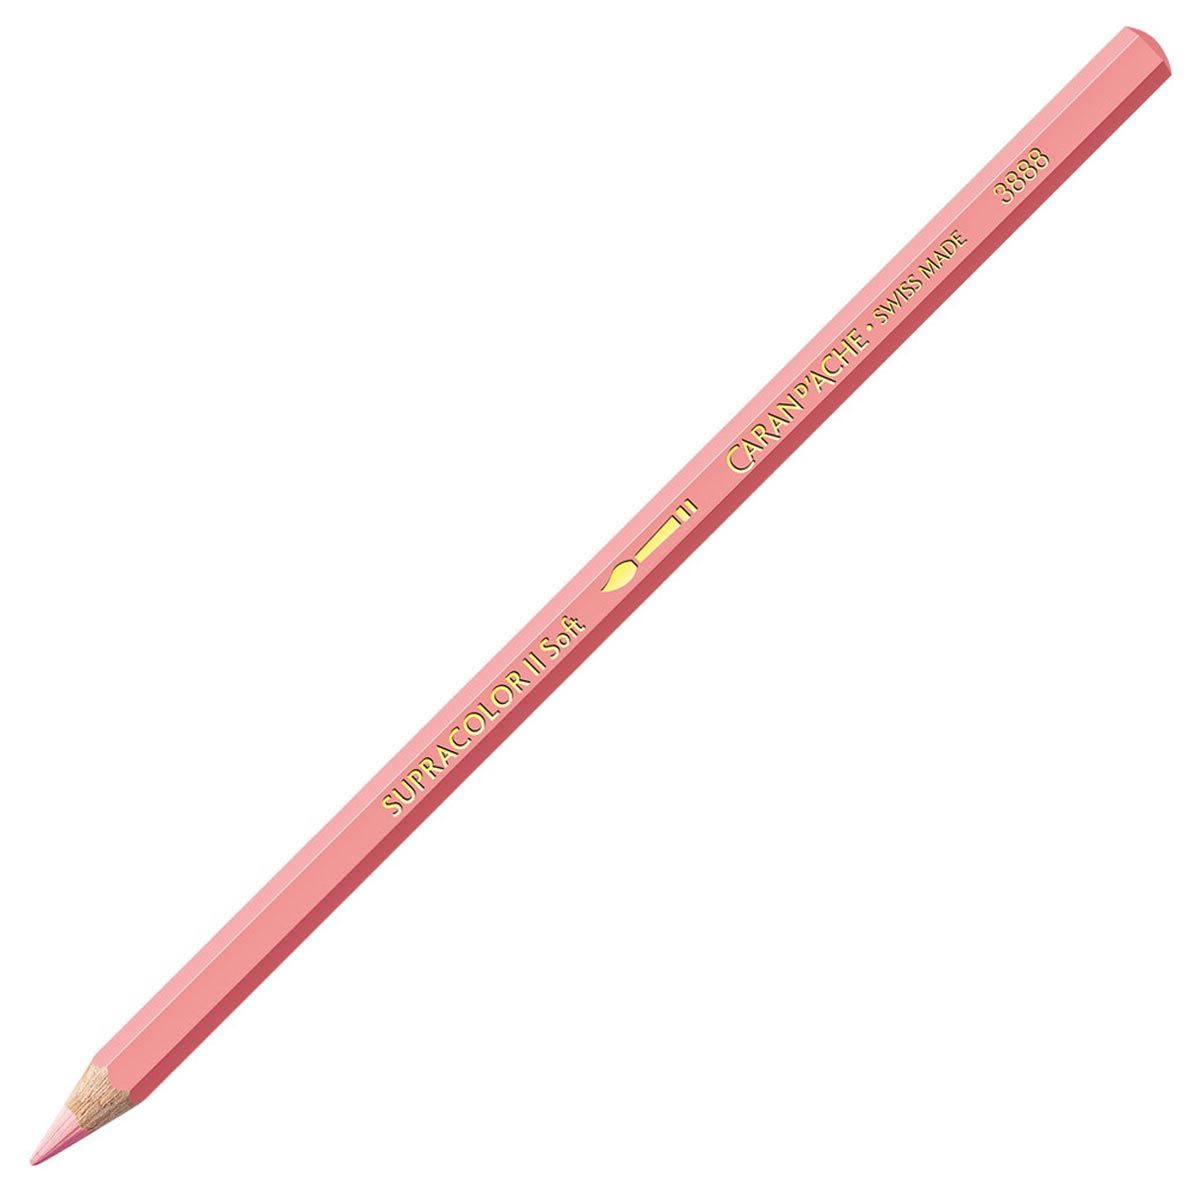 Caran d'Ache Supracolor ll Soft Aquarelle Pencil Salmon Pink 071